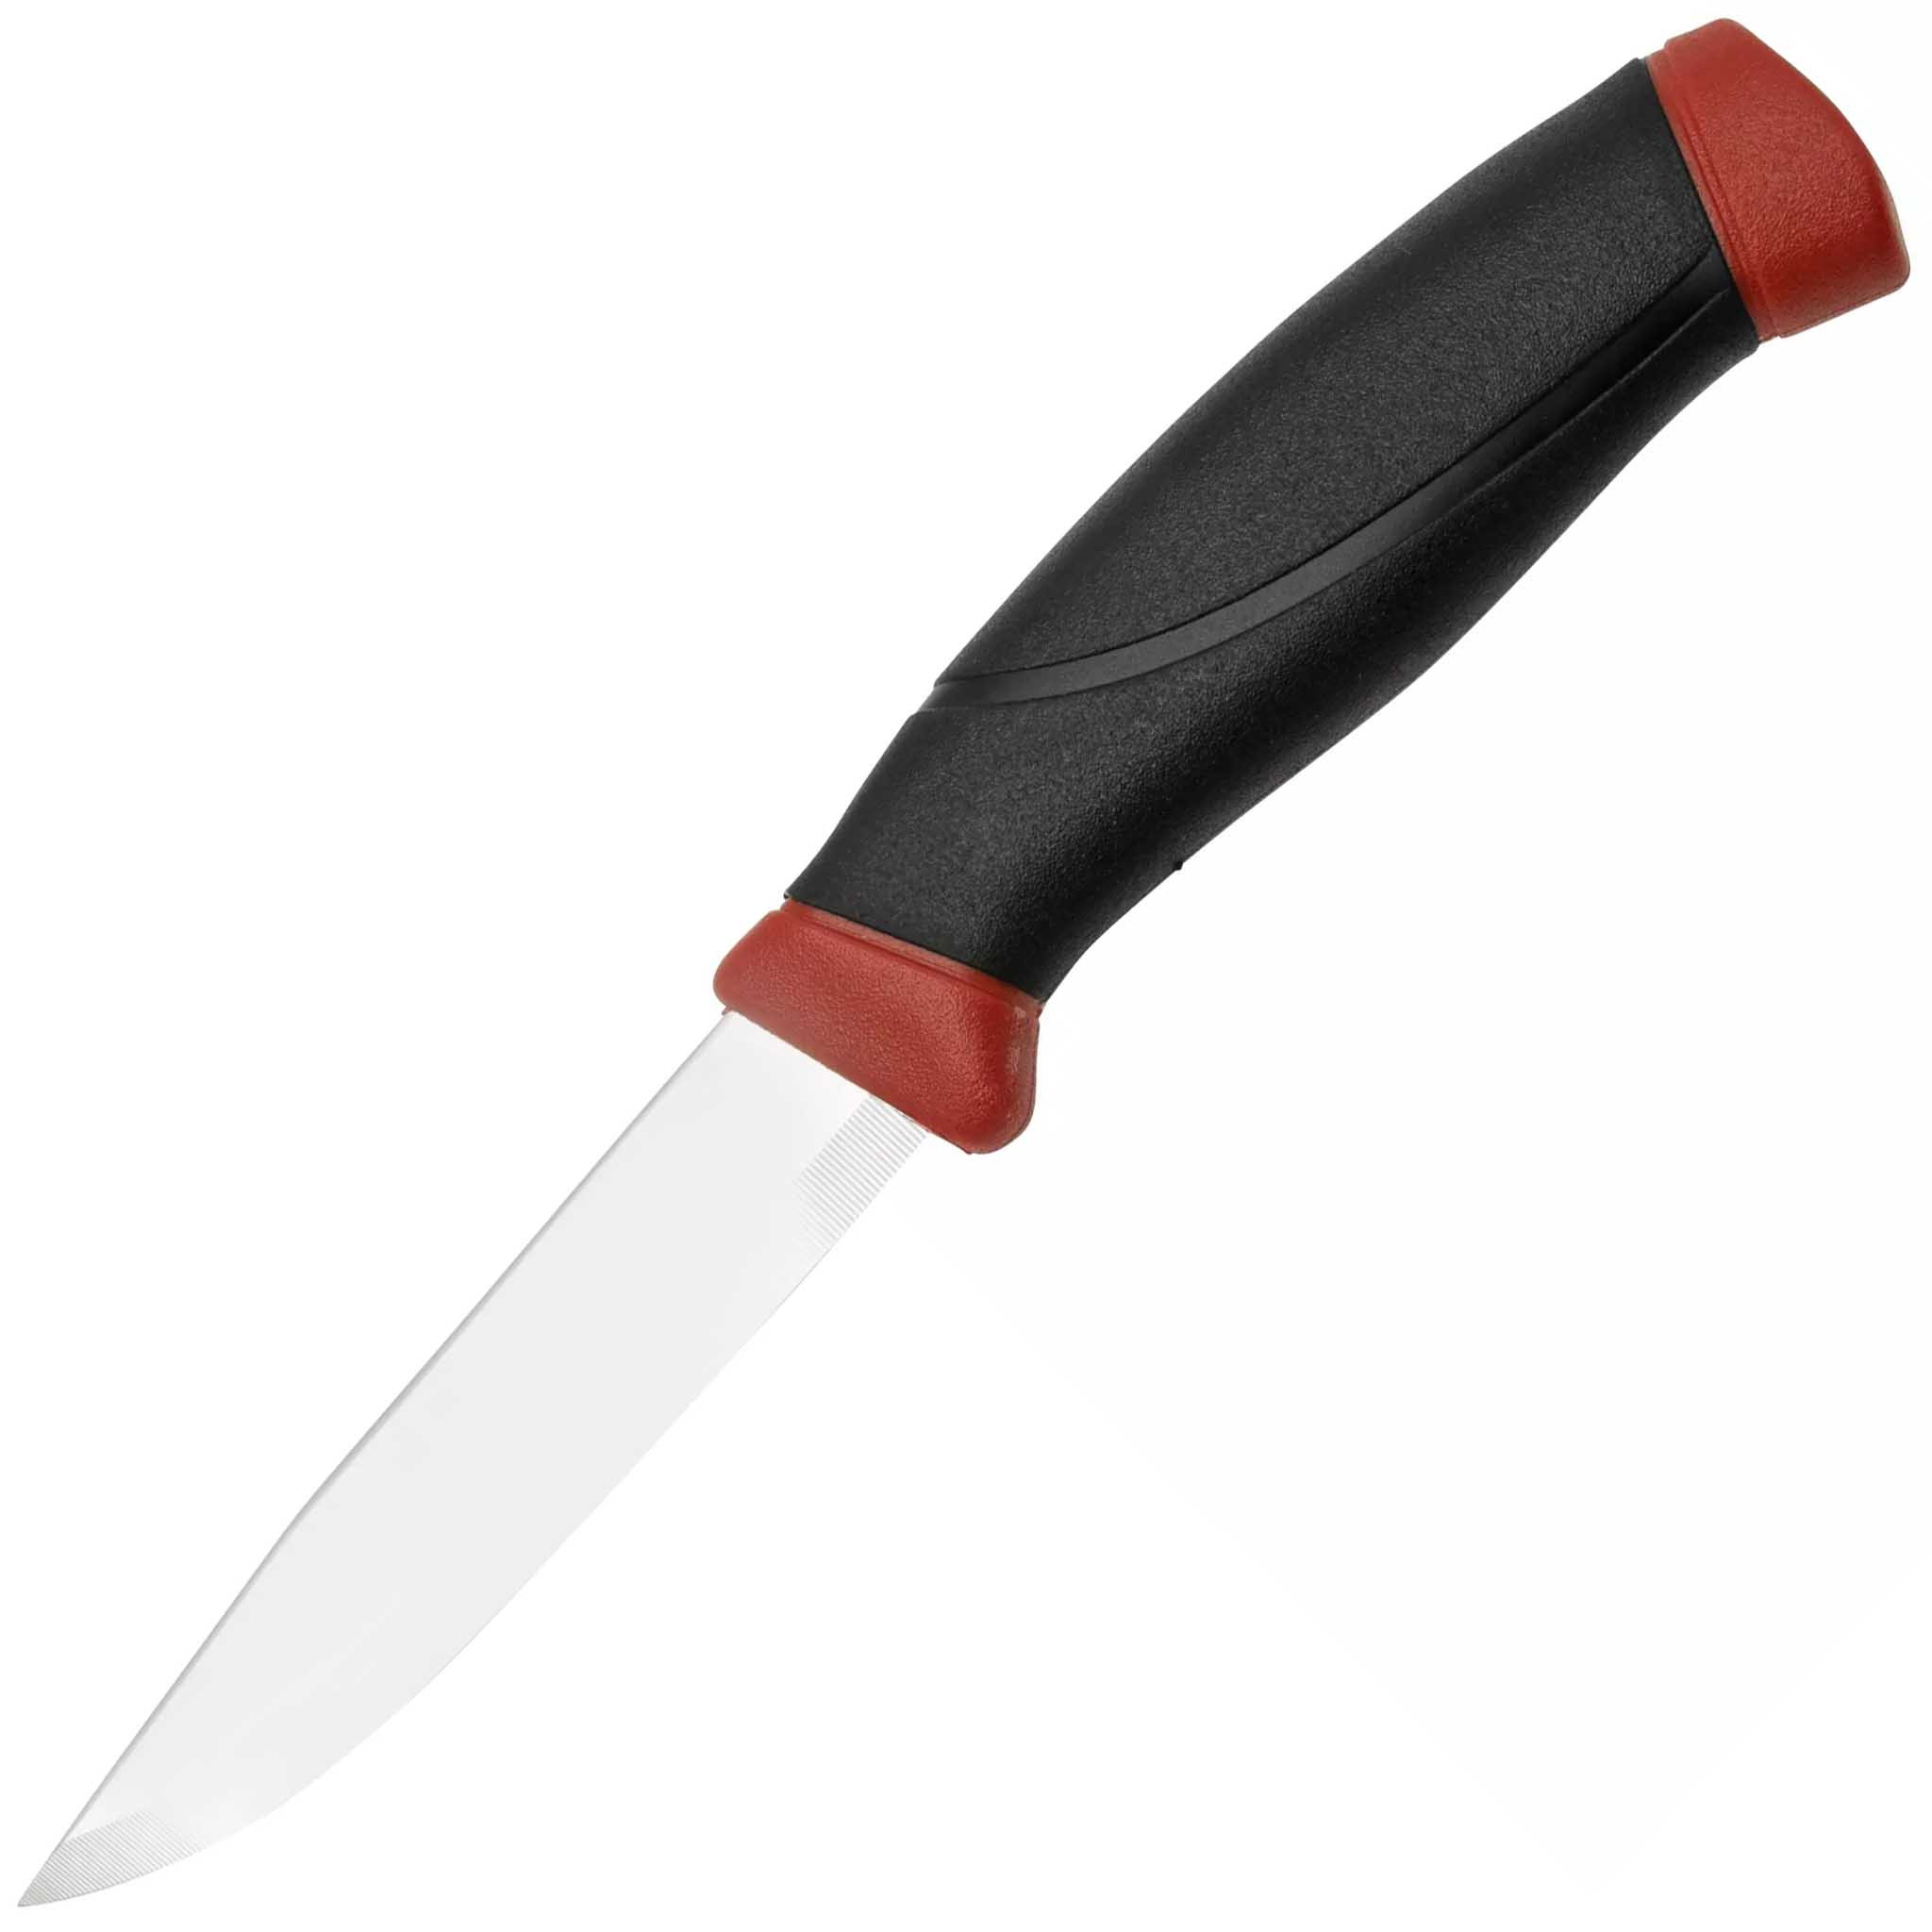 Нож с фиксированным лезвием Morakniv Companion, сталь Sandvik 12C27, рукоять резина, Dala red